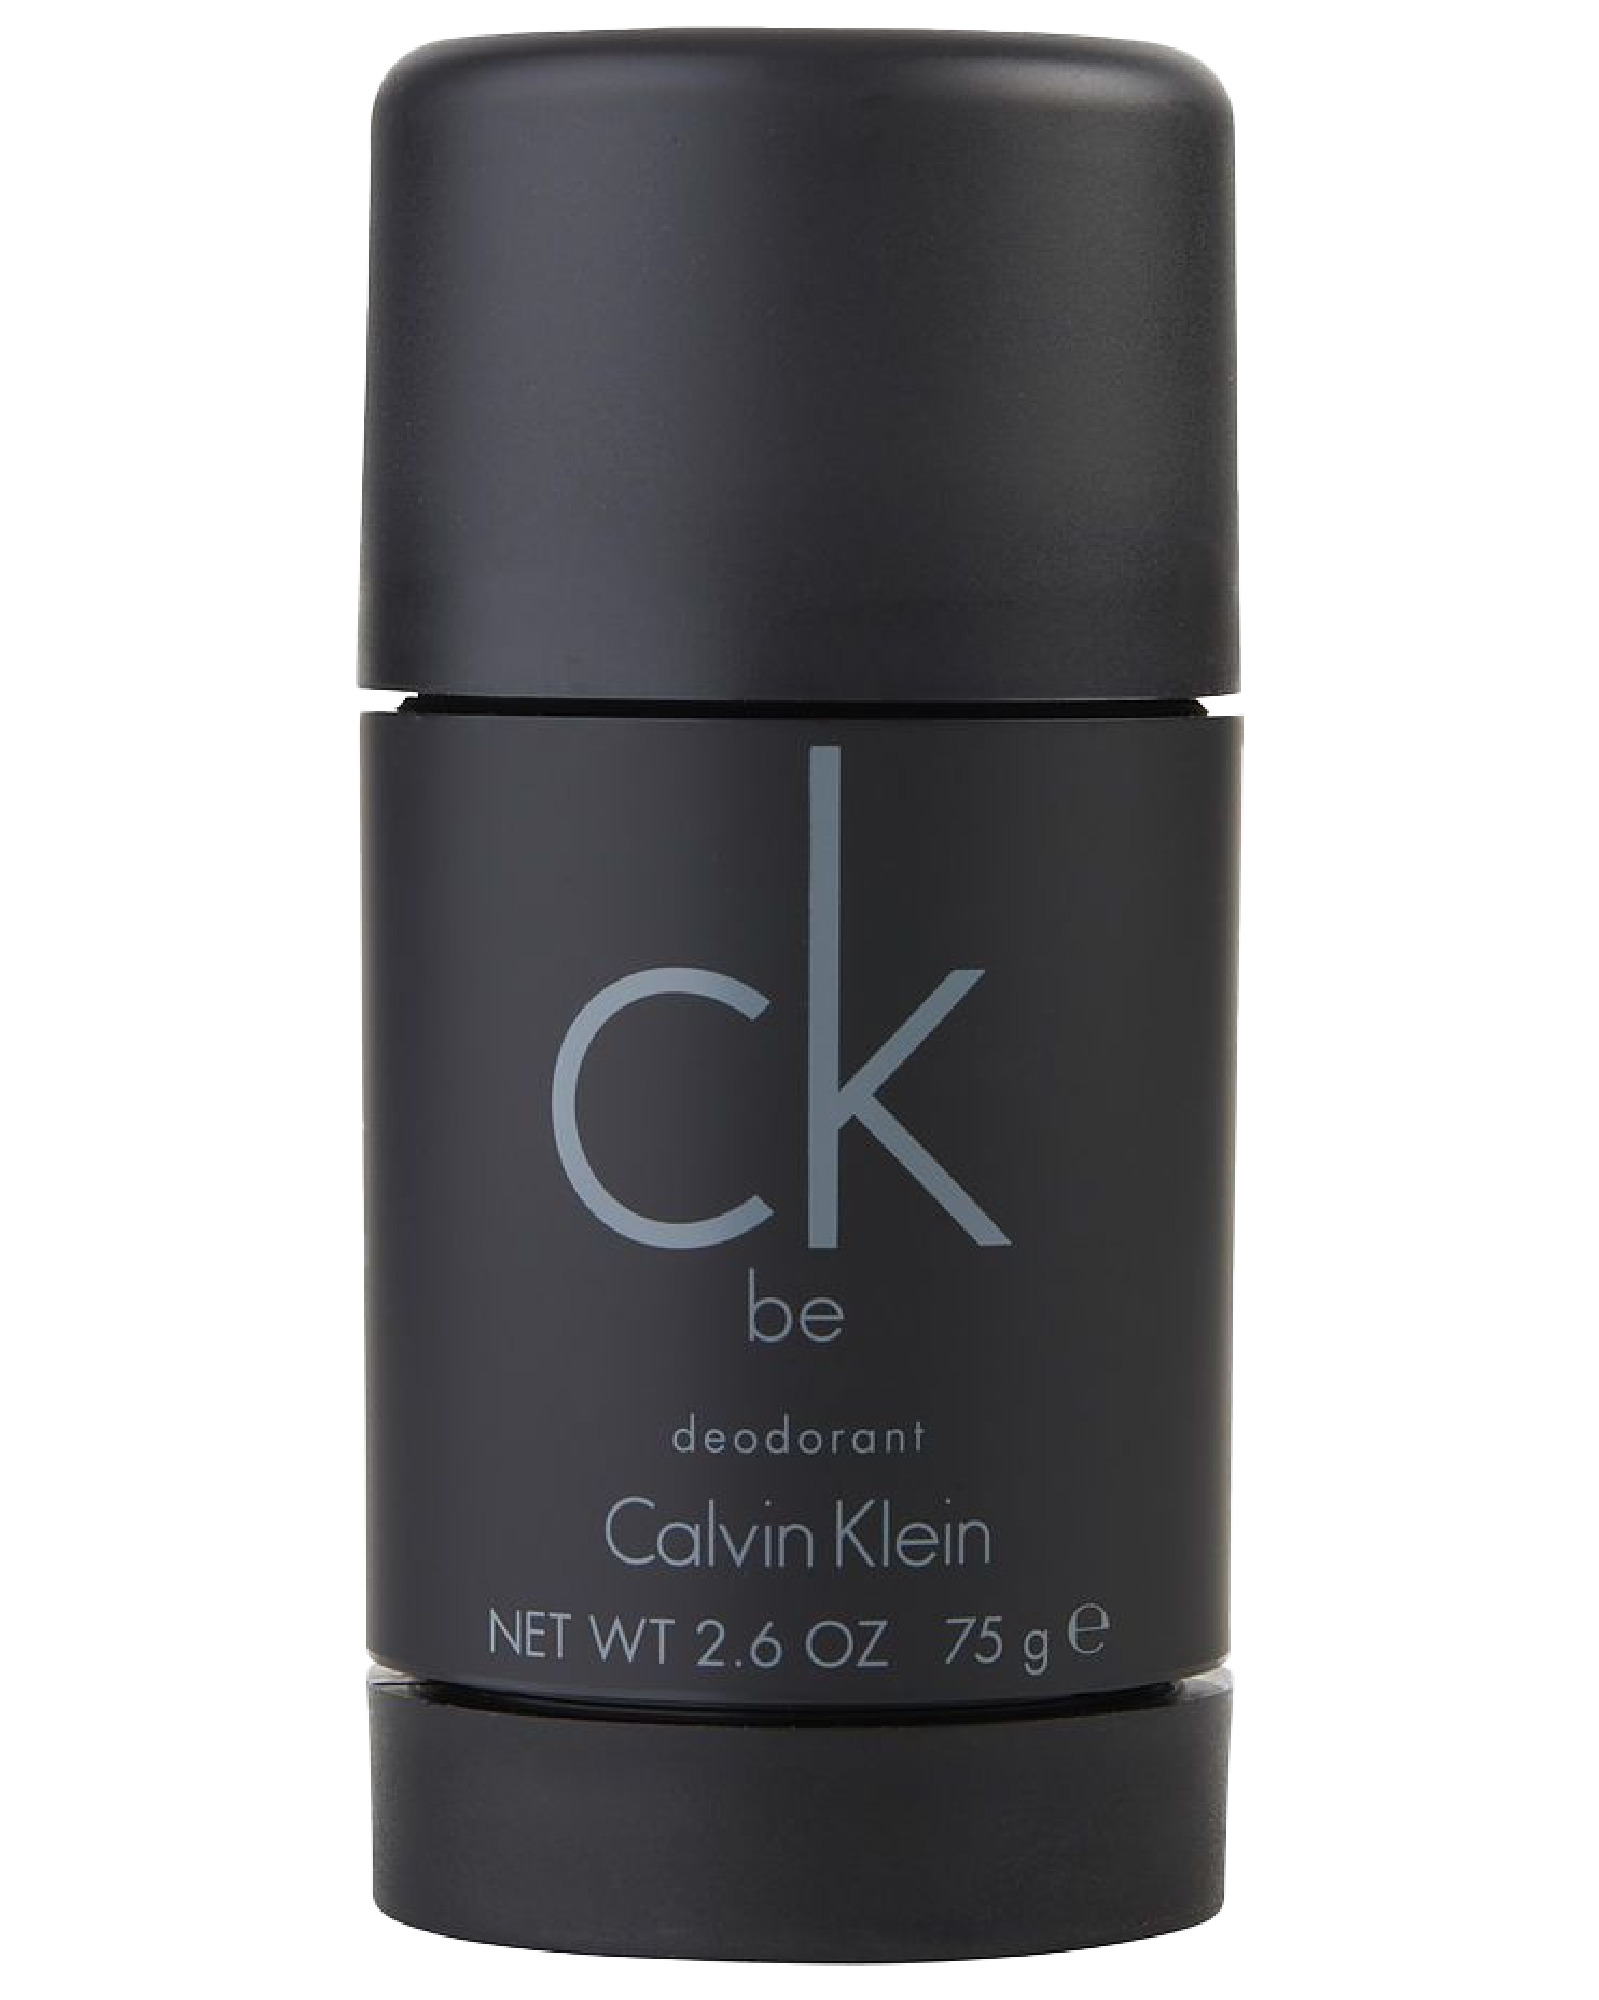 Calvin Klein CK 1 75 deodorant Apotek stift g Be 